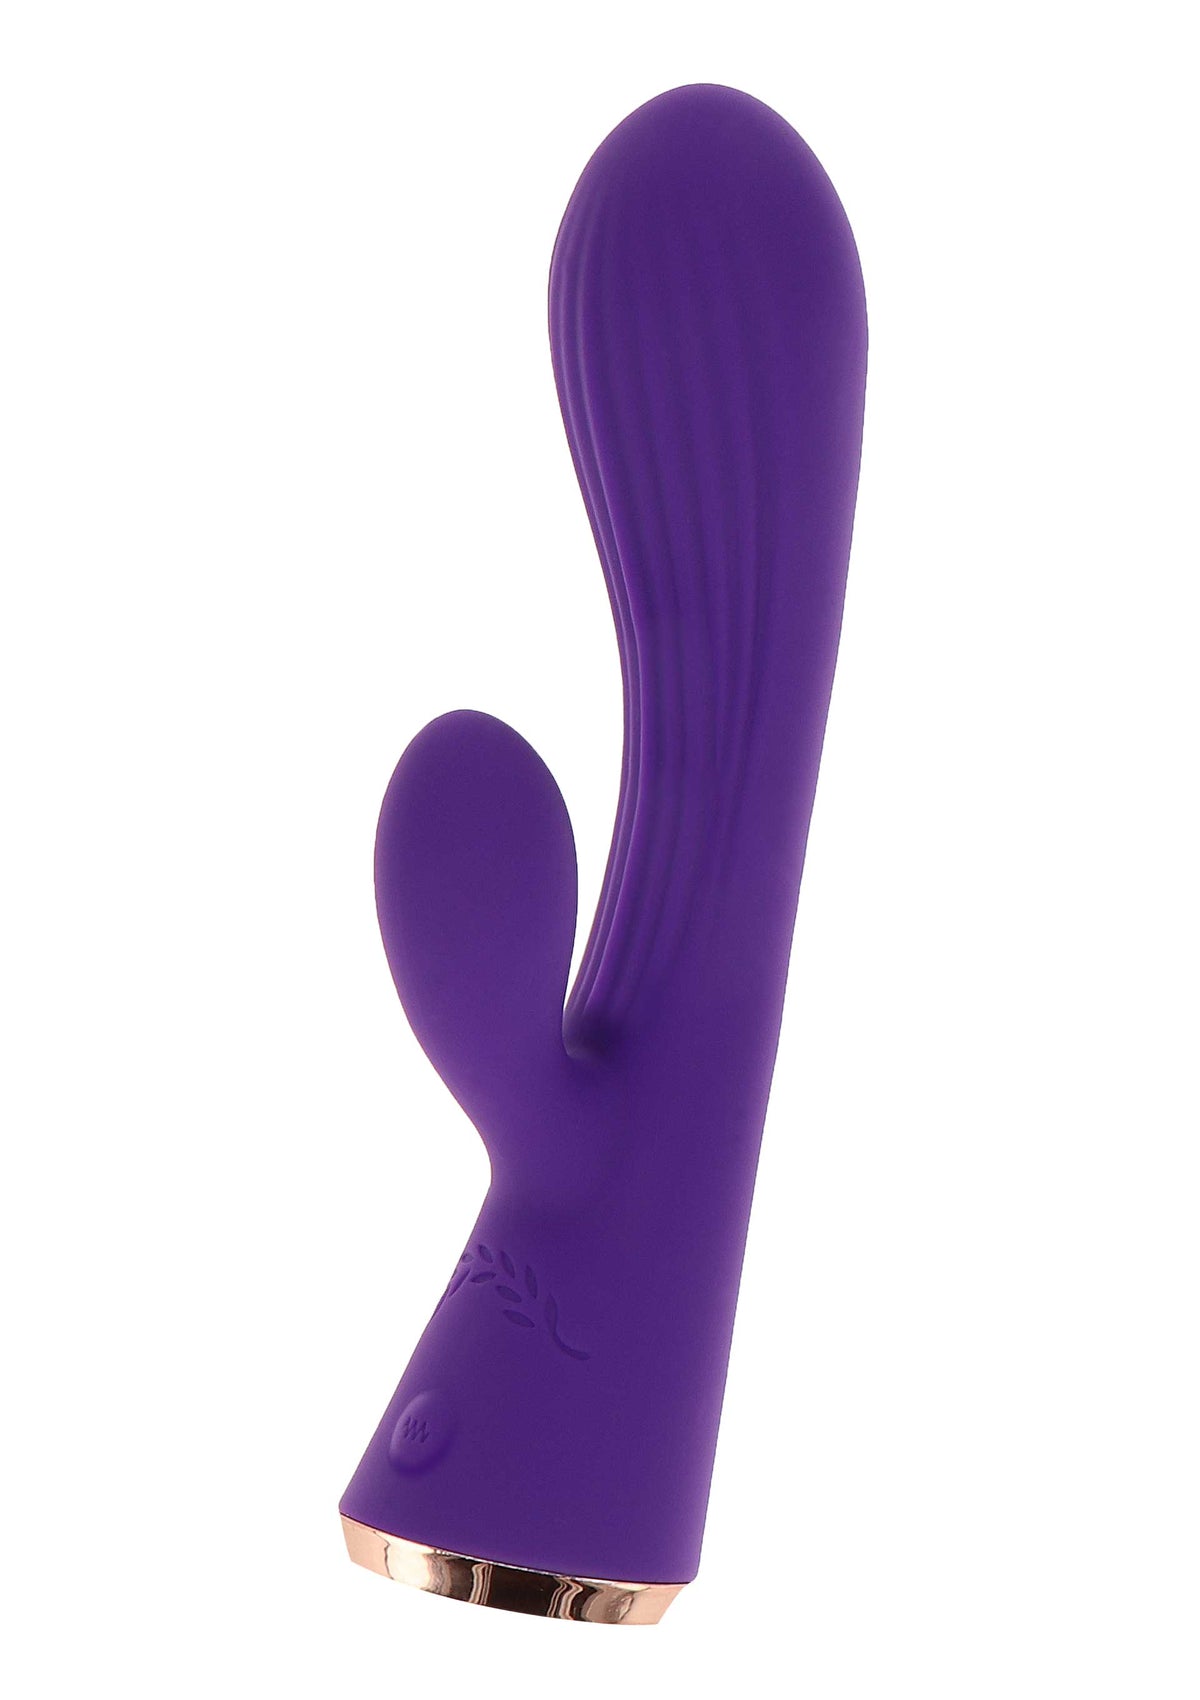 Iris Rabbit Vibrator-erotic-world-munchen.myshopify.com